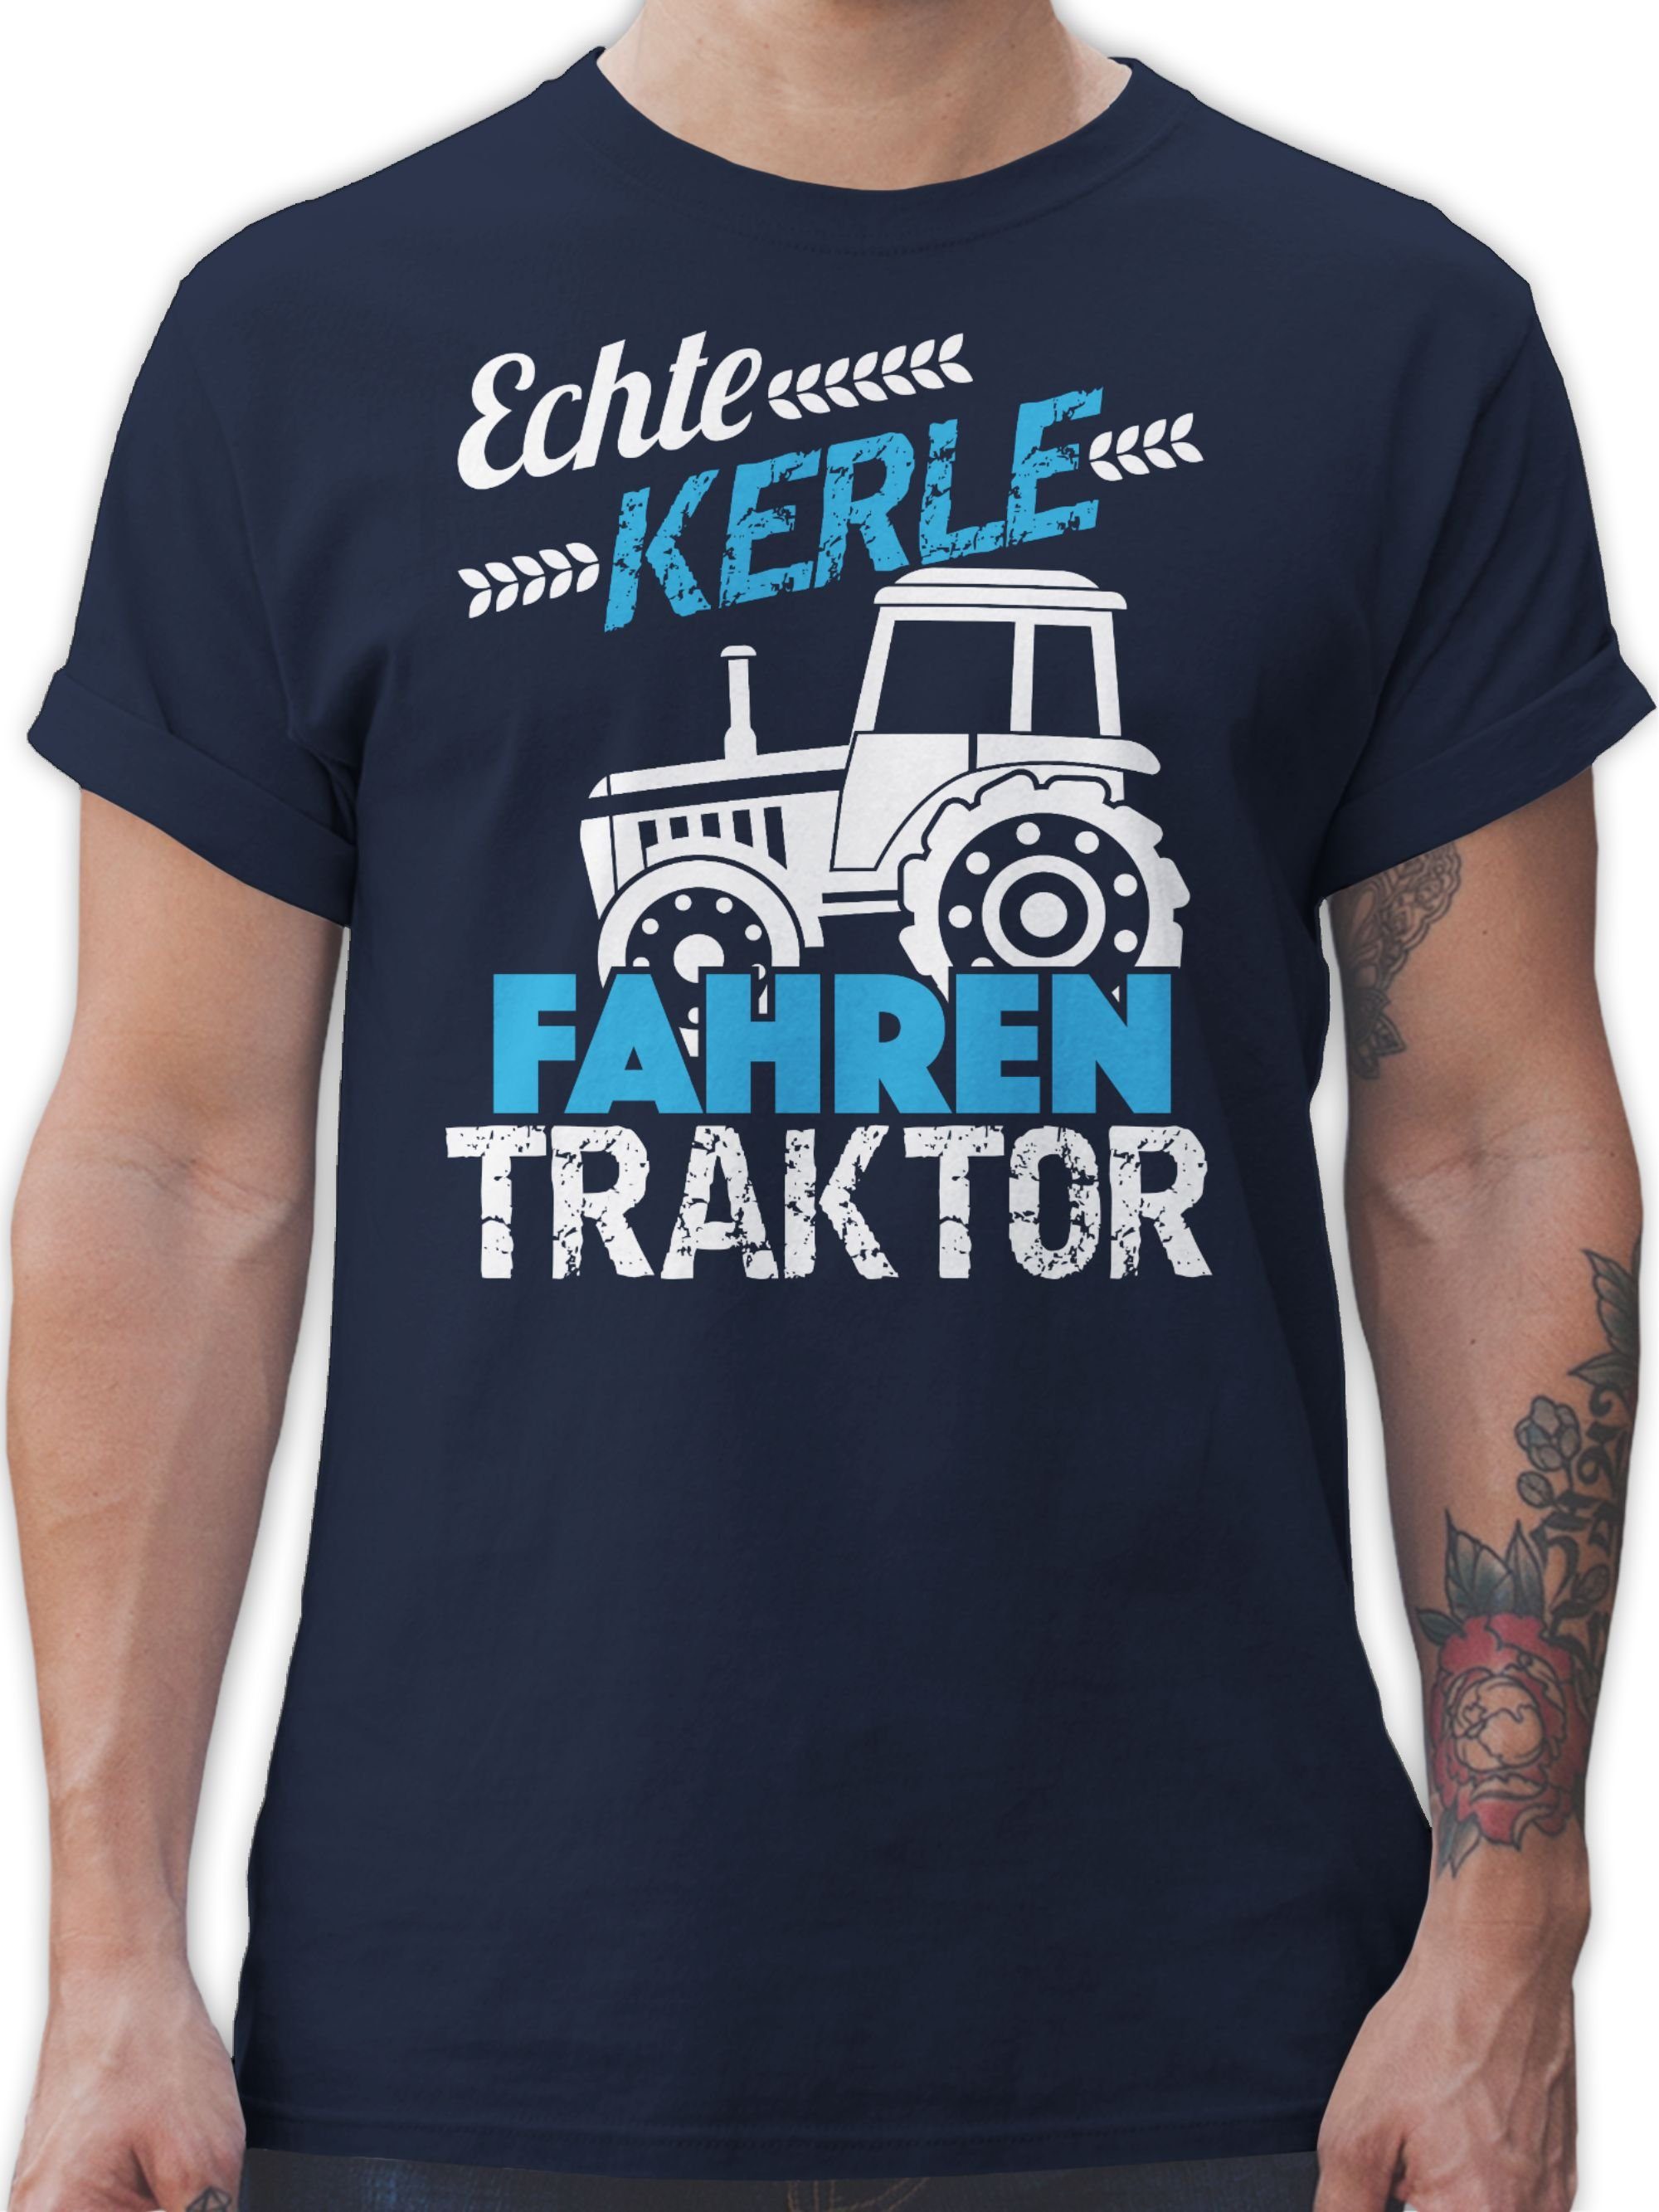 Shirtracer T-Shirt Echte Kerle 02 Navy Blau Traktor fahren Traktor